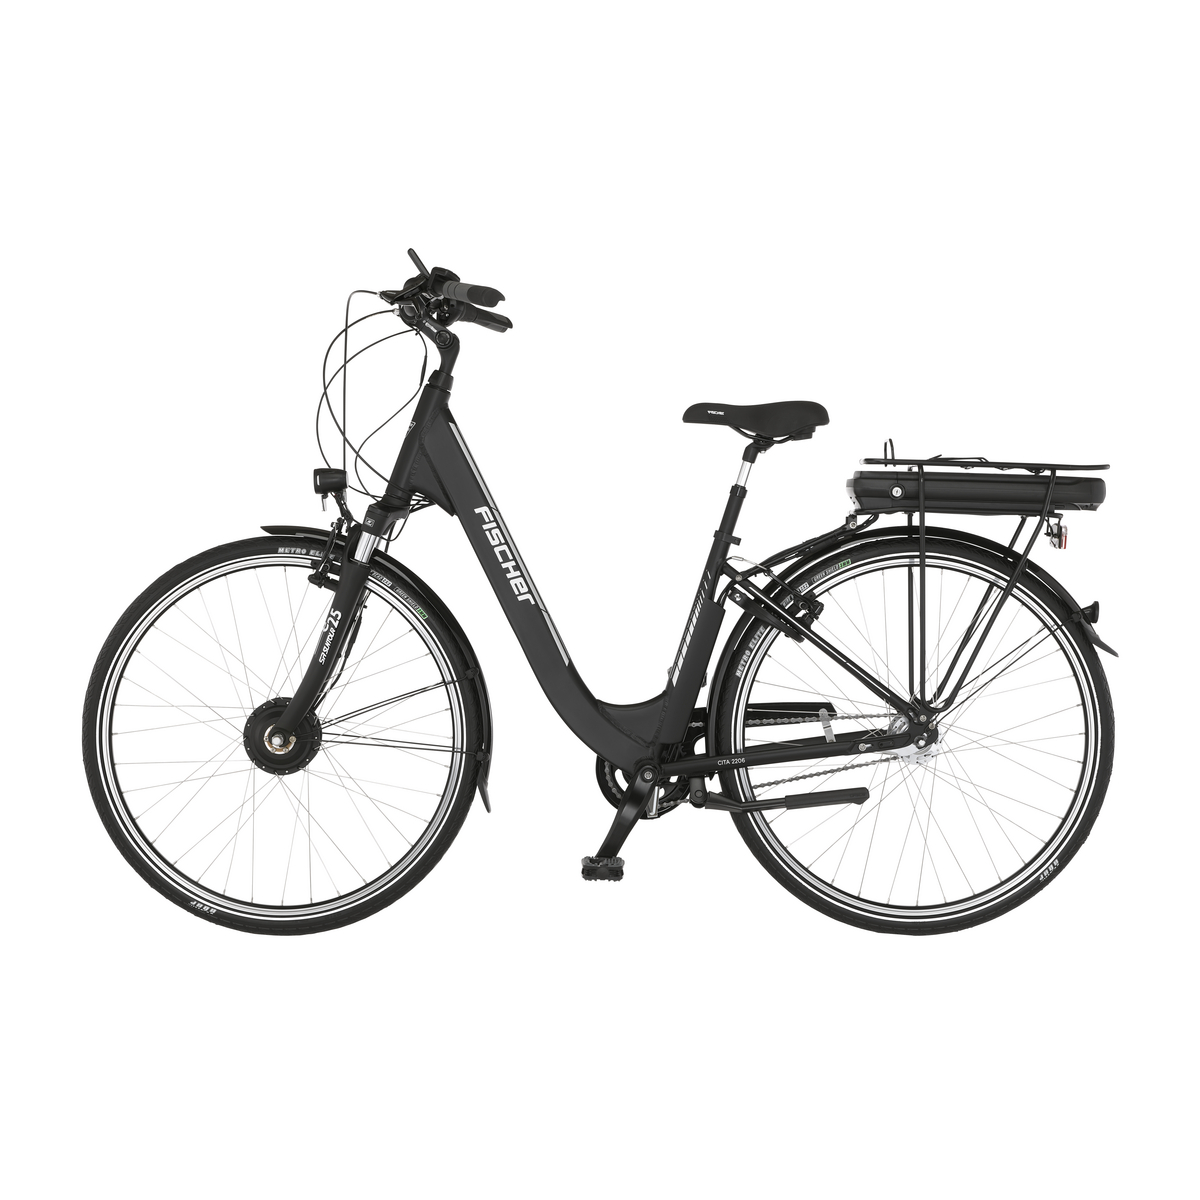 FISCHER CITA ECU | Outlet | | E-Bike E-Bikes Wh 44 Outlet 522 matt, E-Bikes City - 2206 RH cm, schwarz - Outlet Sale% Generalüberholt Zoll, 28 City 